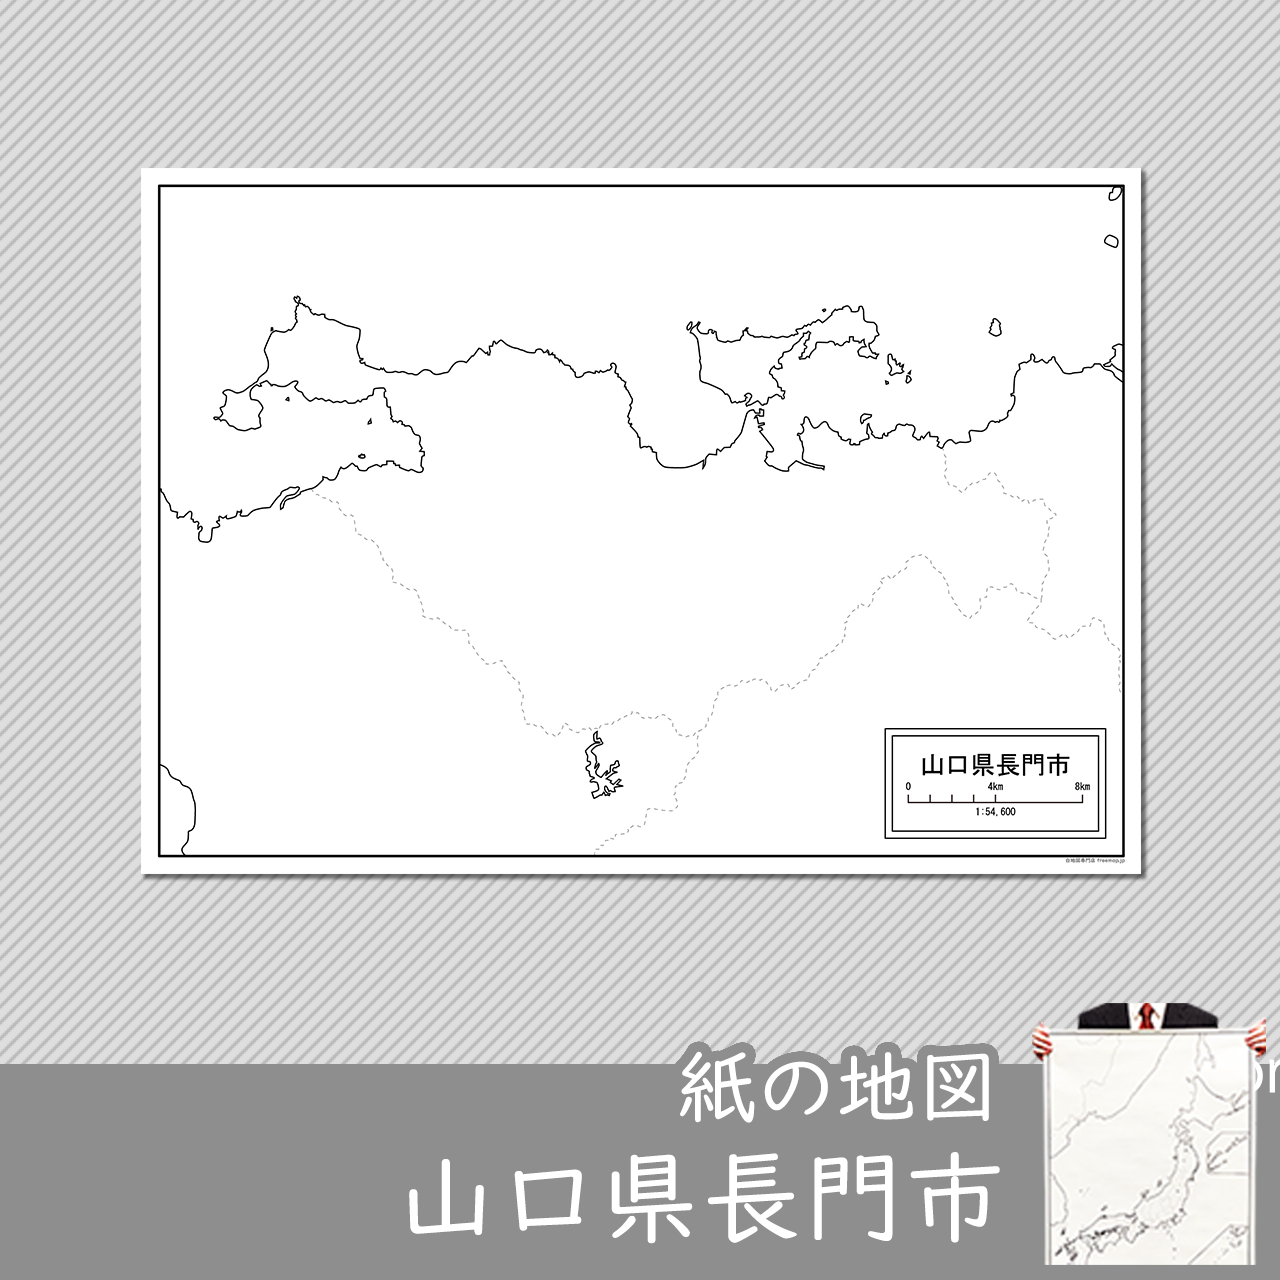 長門市の紙の白地図のサムネイル